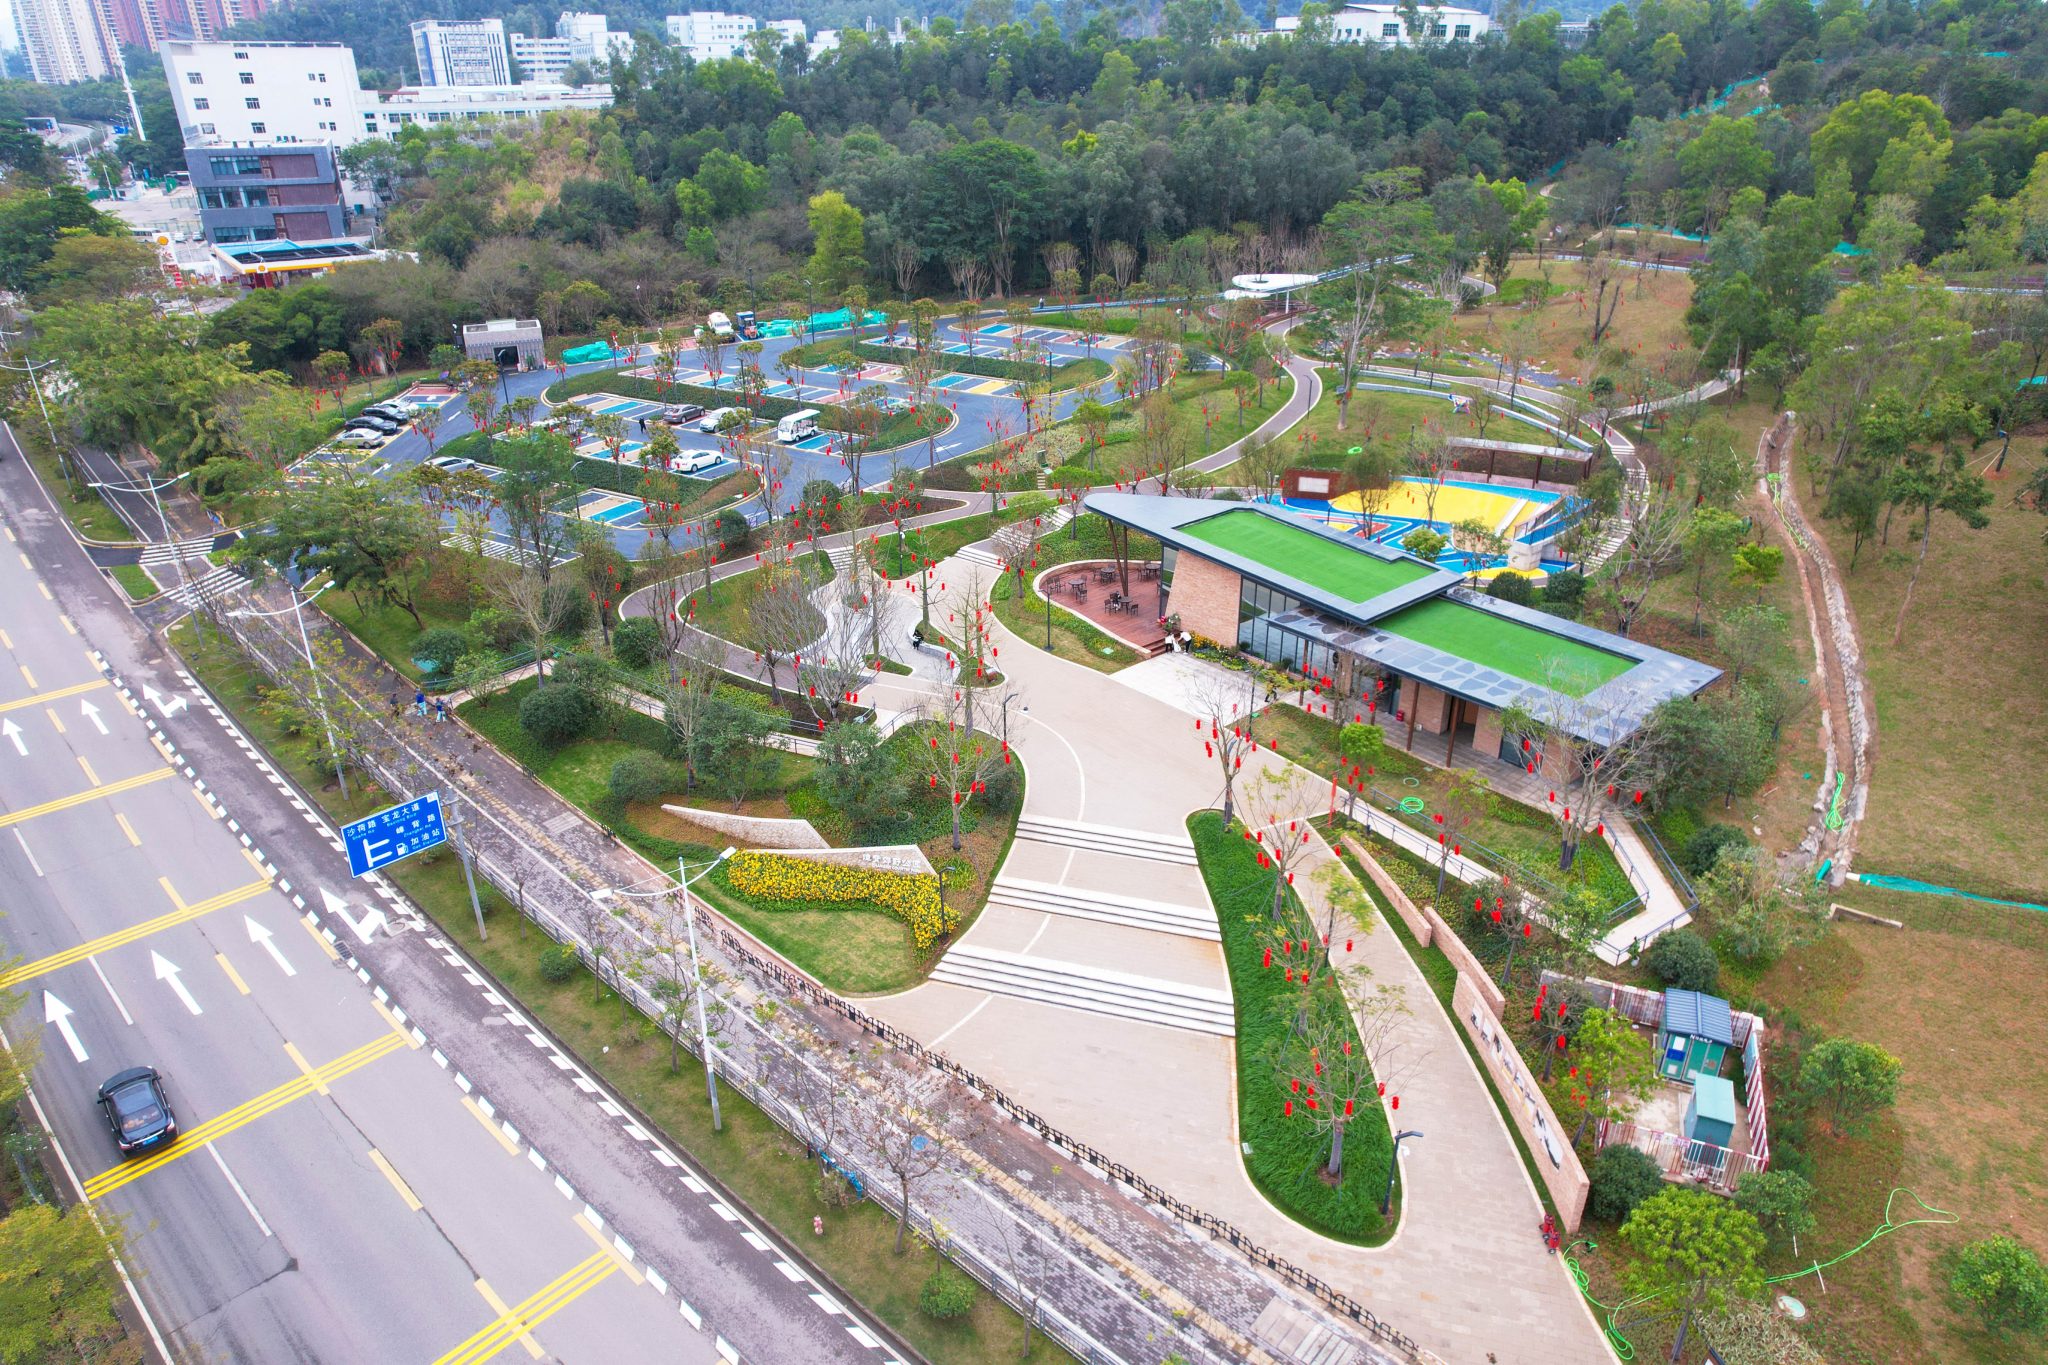 律动山间·享趣嶂背 | 深圳 嶂背郊野公园建成开放 | 翰博设计 - 景观及建筑规划设计